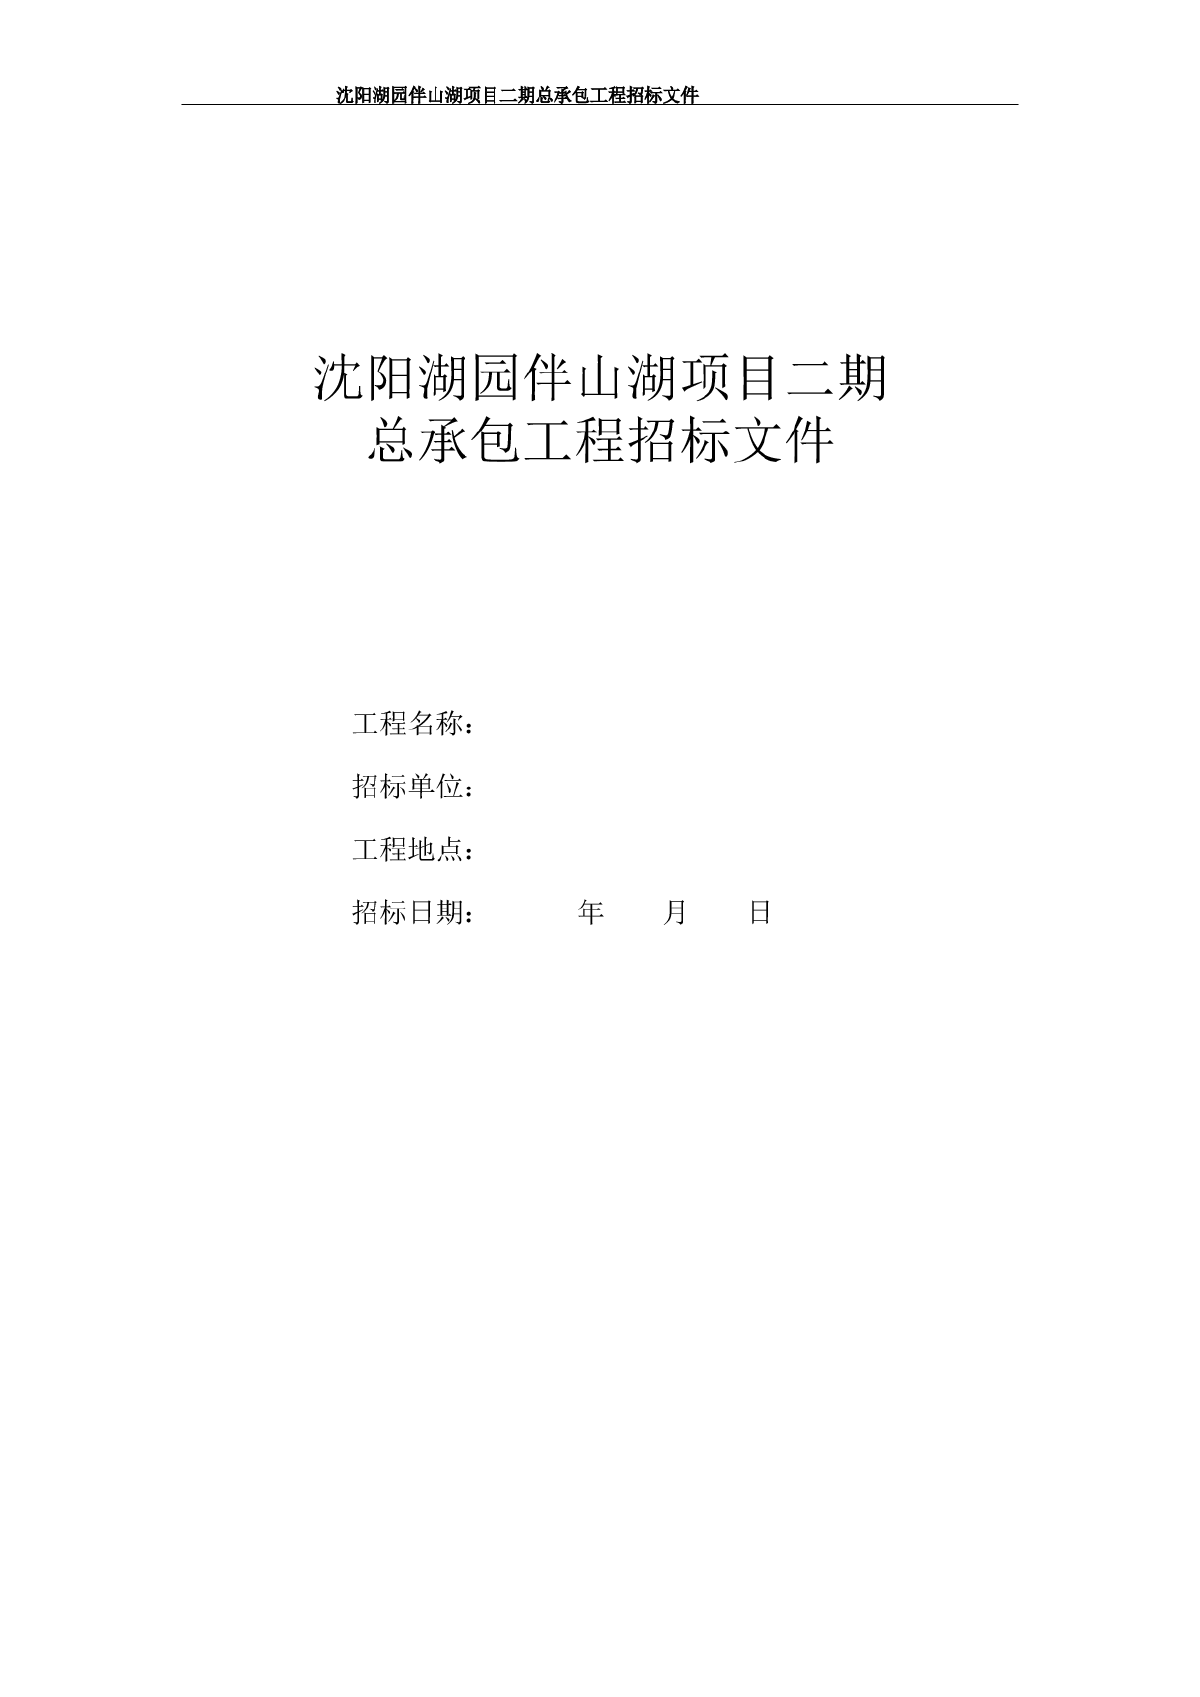 【沈阳】湖园伴山湖项目二期总包工程招标文件